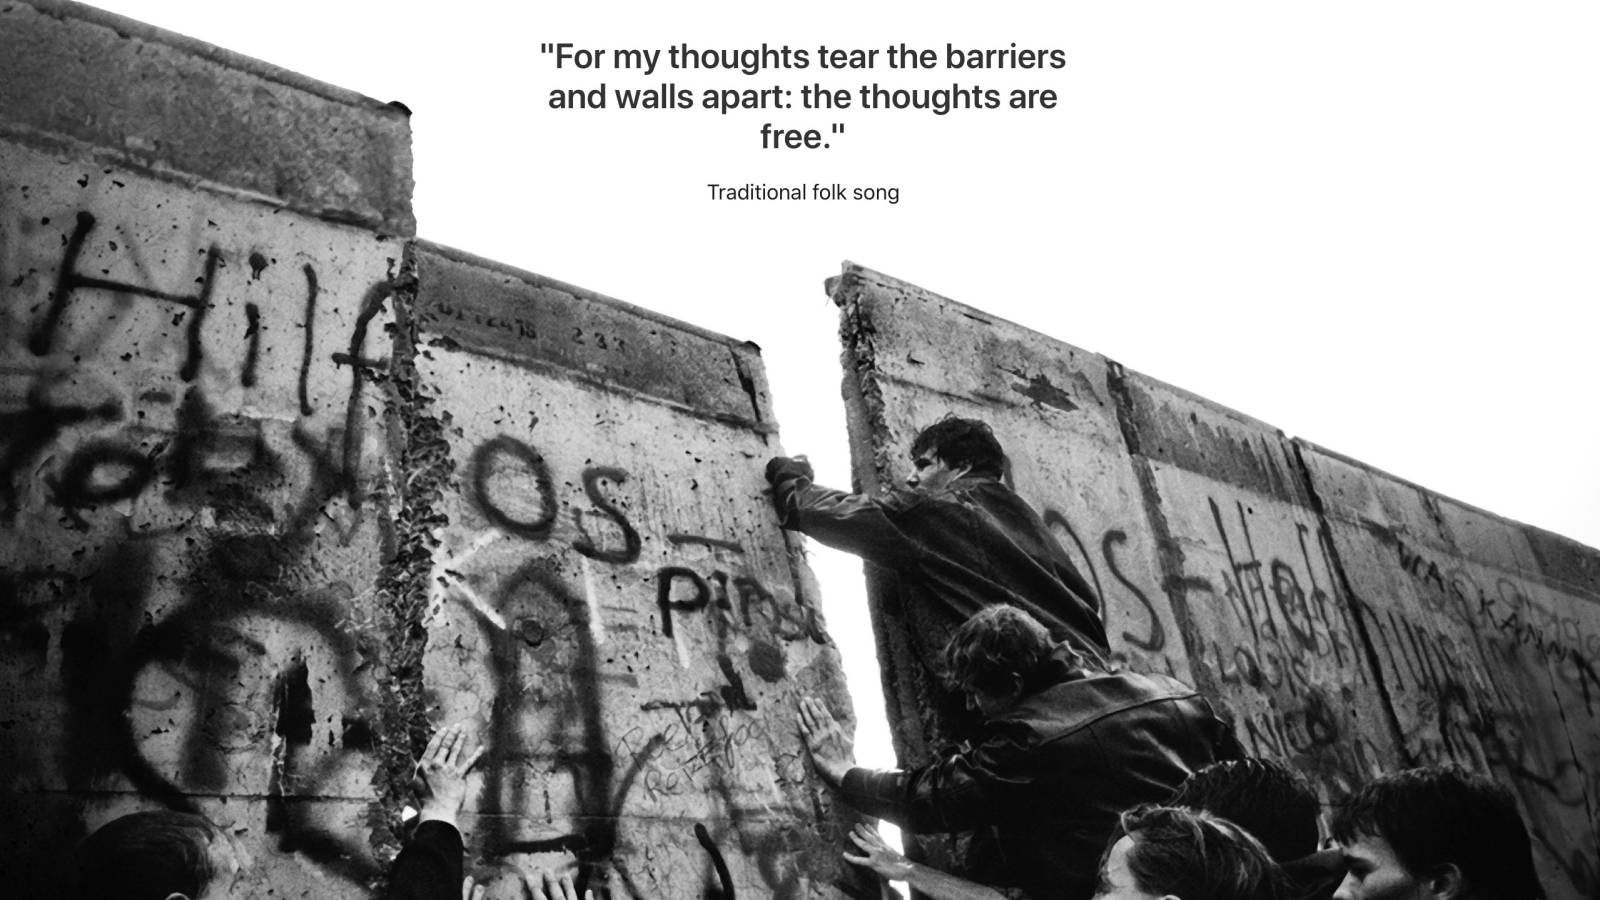 De val van de Berlijnse muur